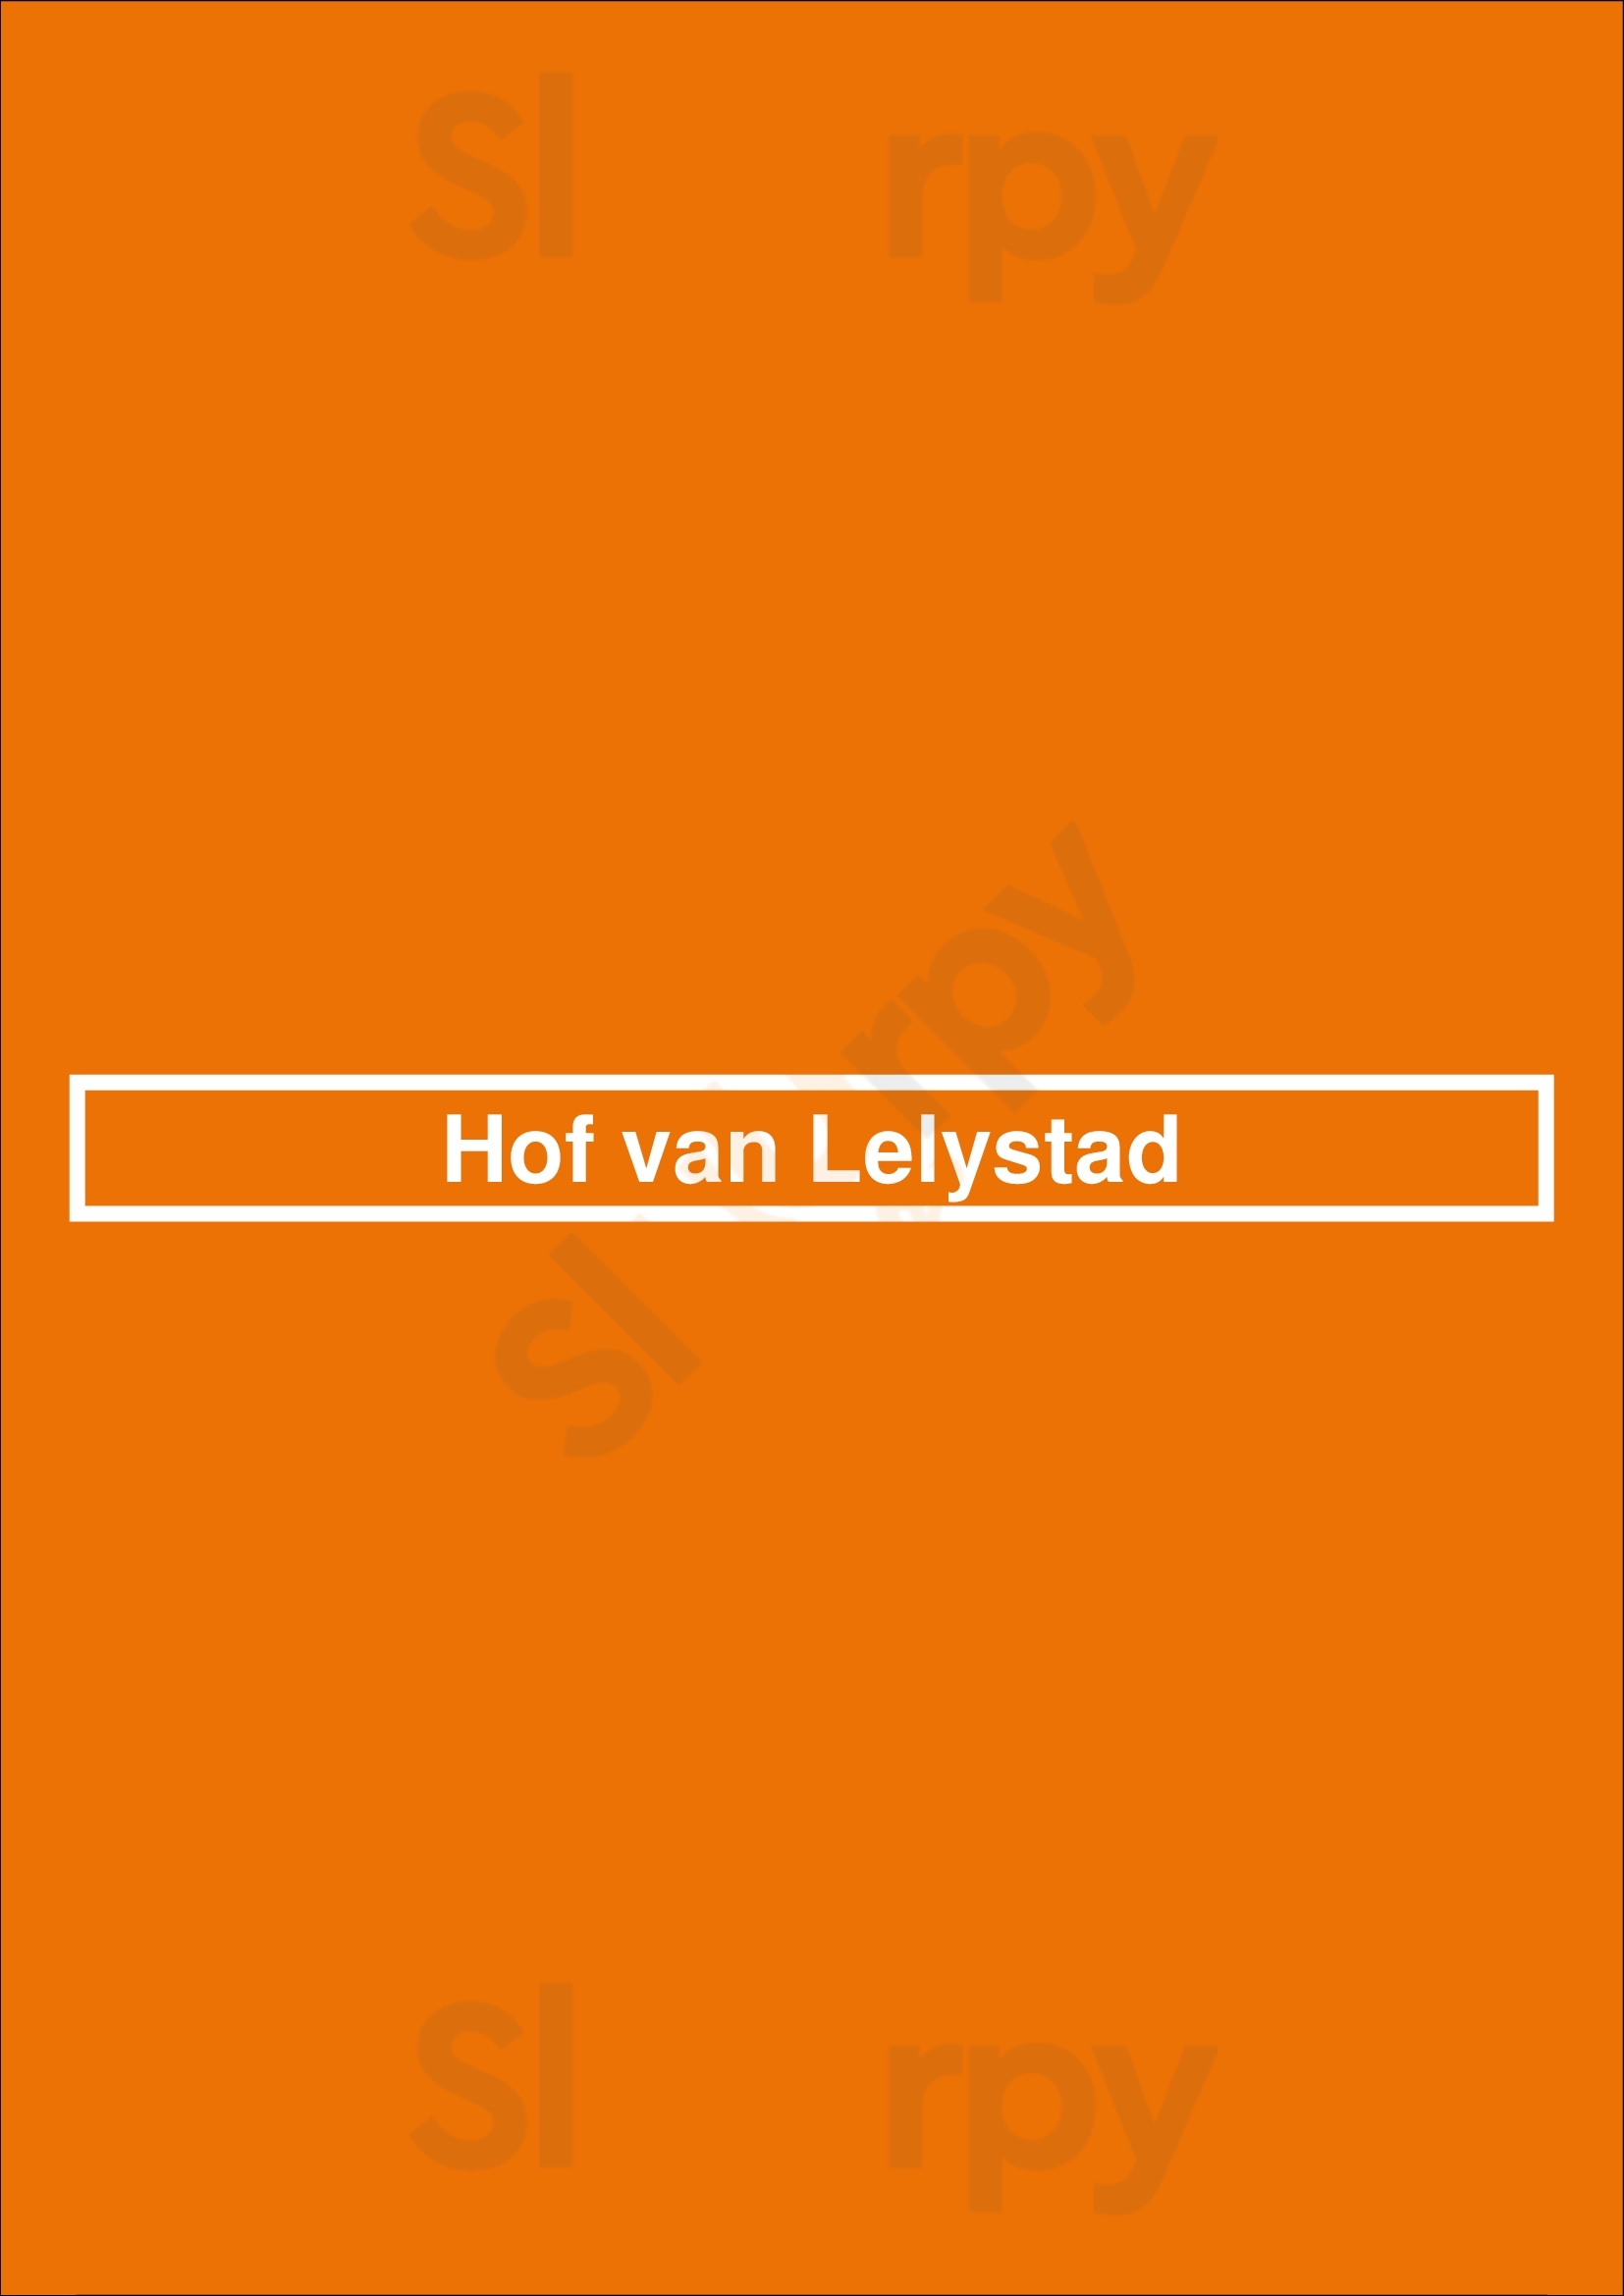 Hof Van Lelystad Lelystad Menu - 1